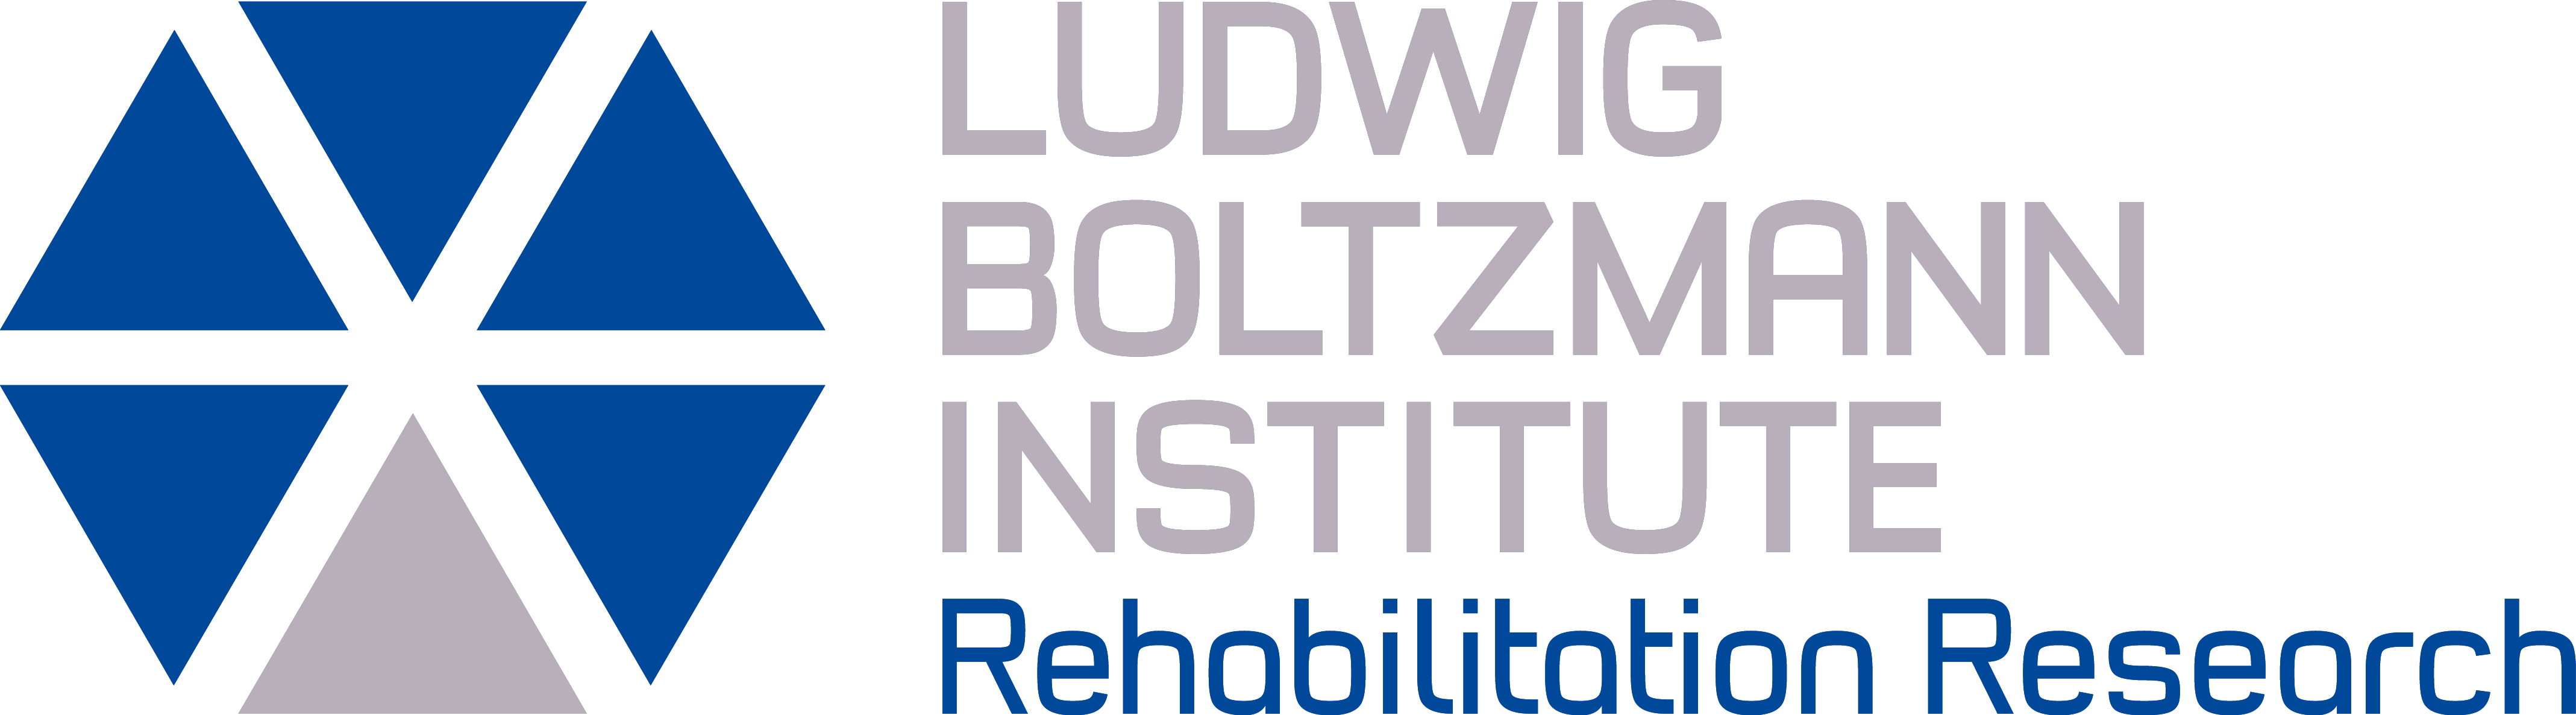 LBG logo